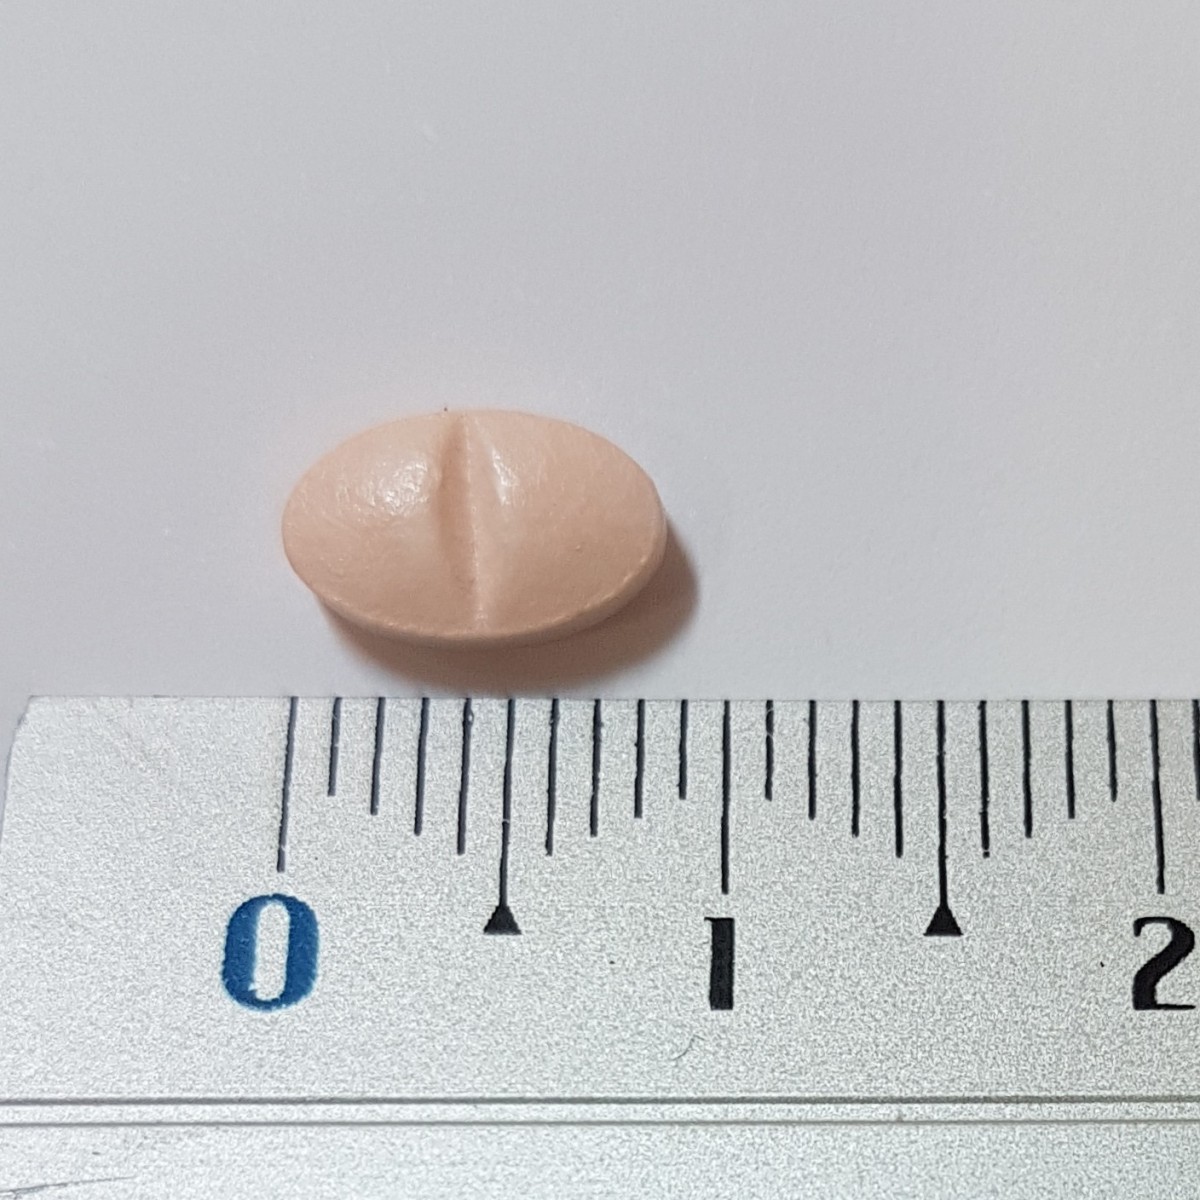 SIMVASTATINA VEGAL 10 mg COMPRIMIDOS EFG, 28 comprimidos fotografía de la forma farmacéutica.